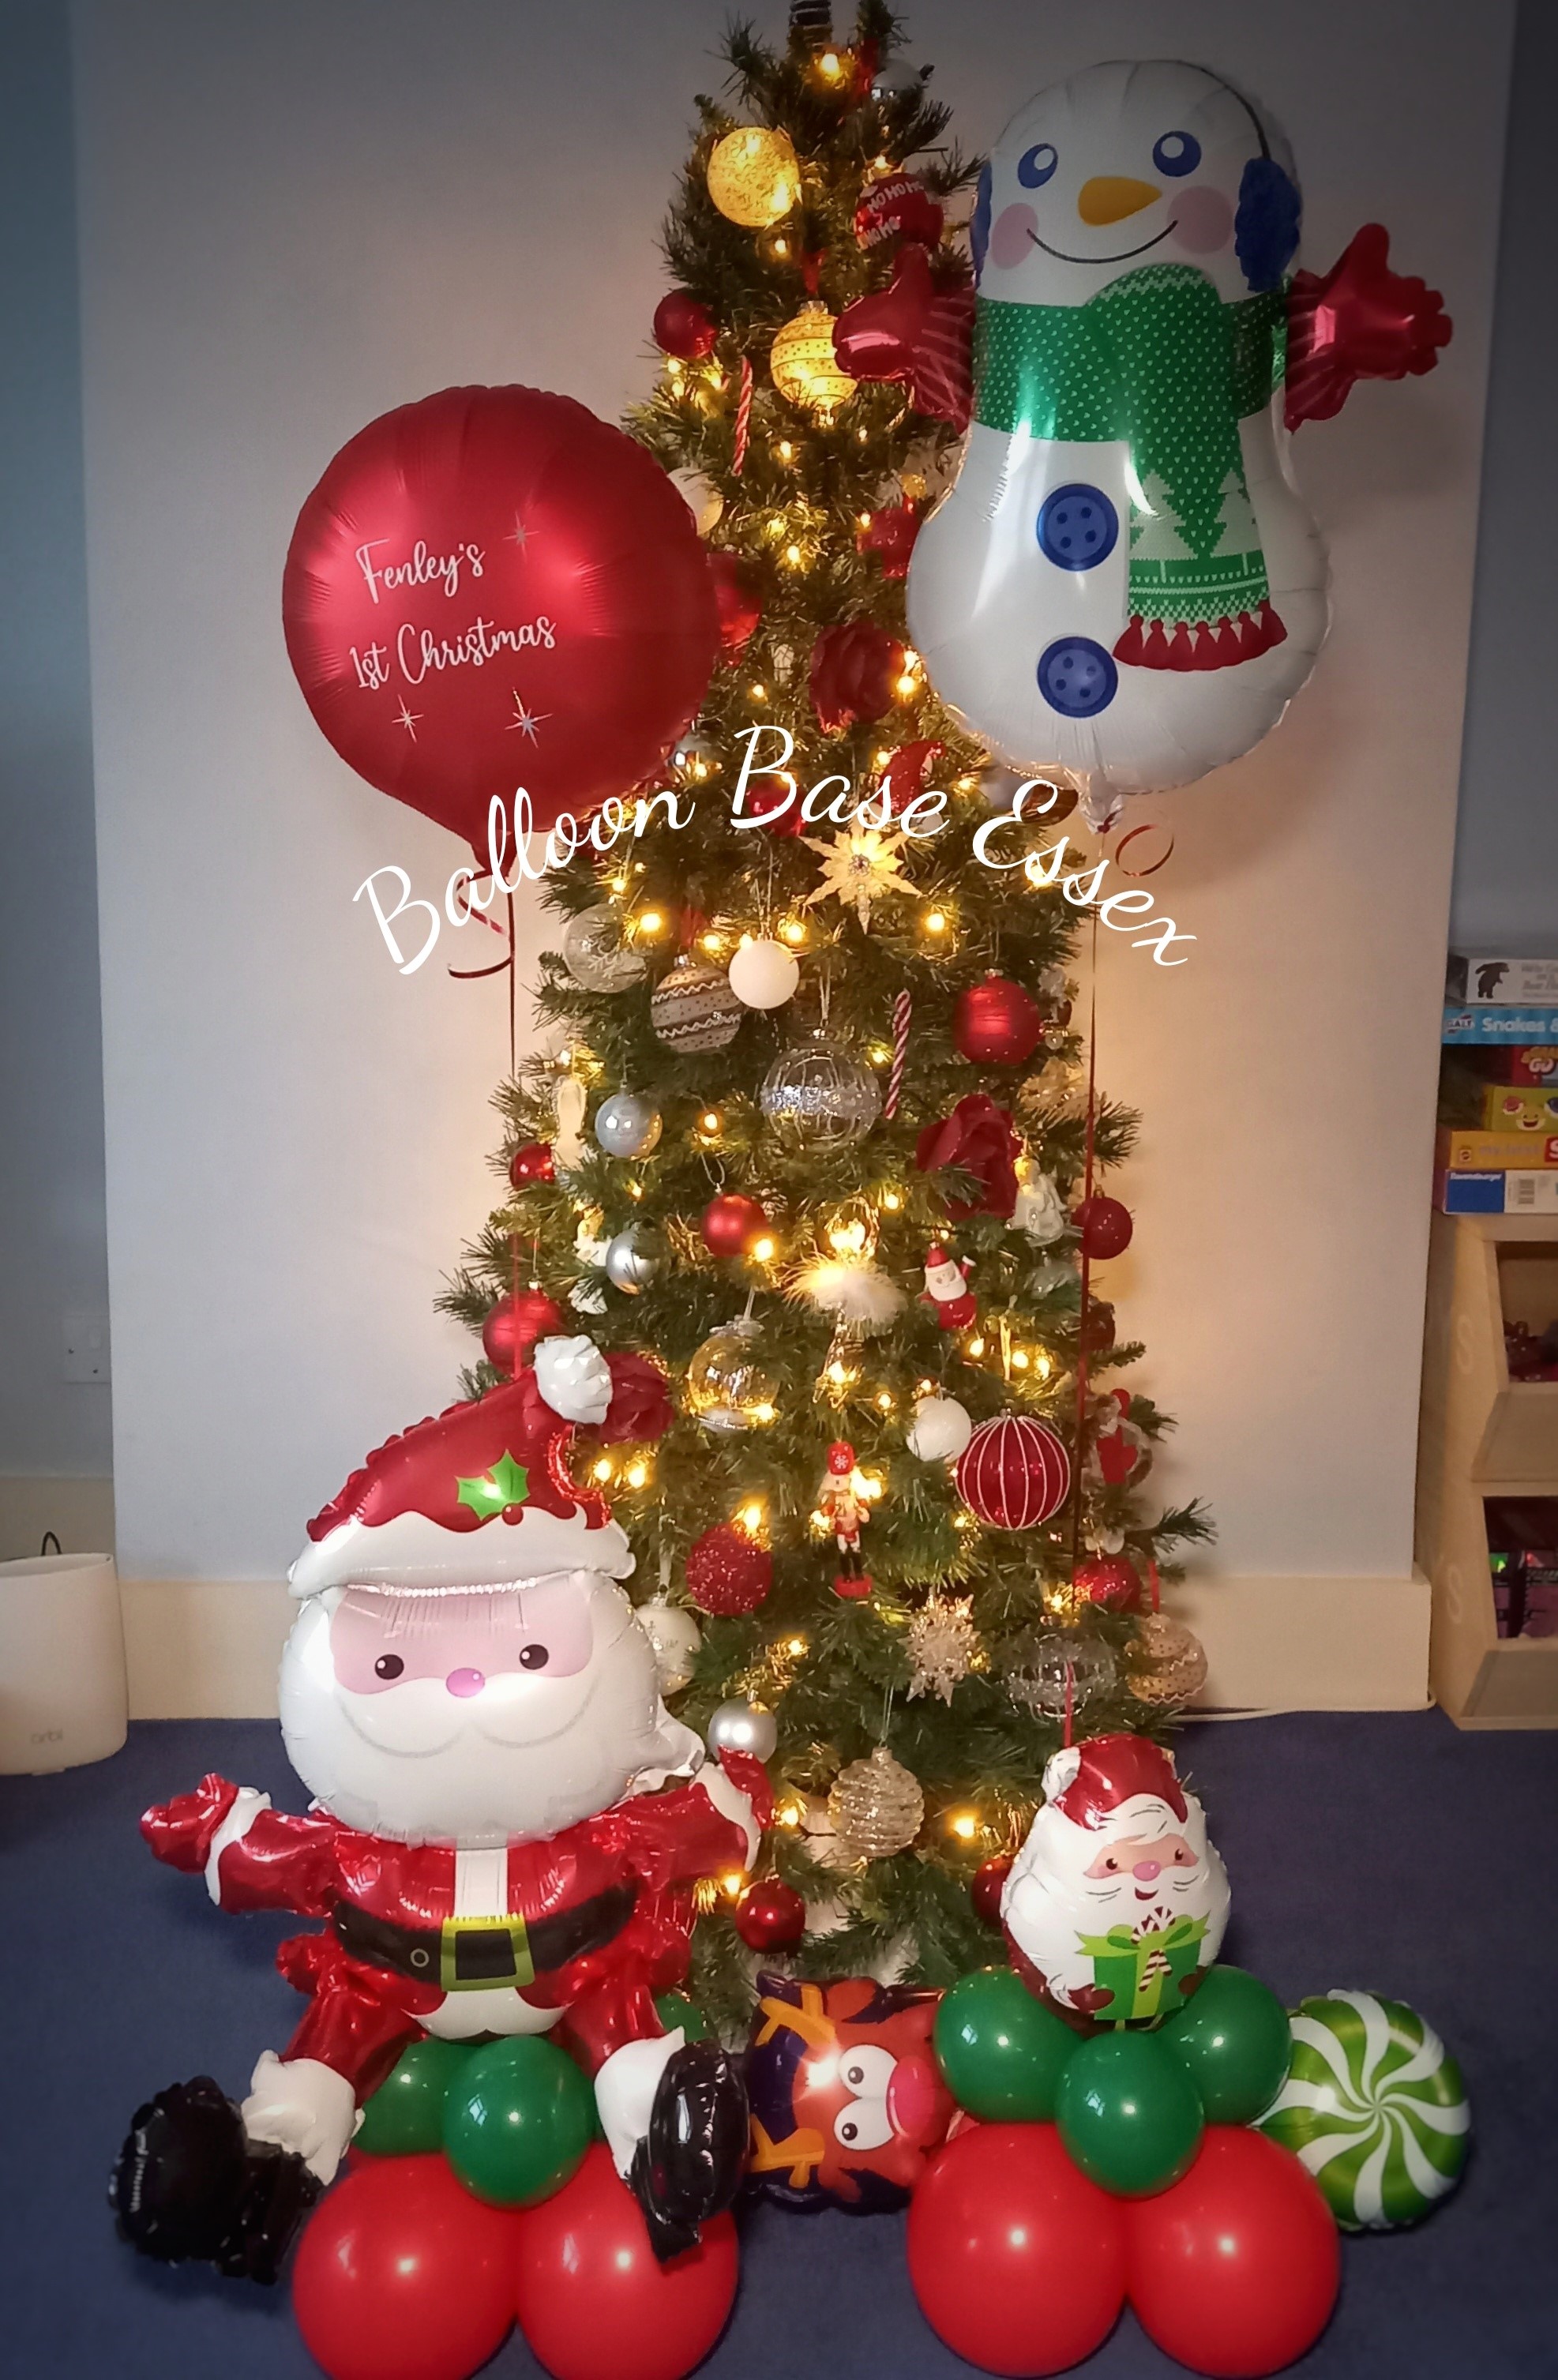 Christmas Santa and snowman balloons